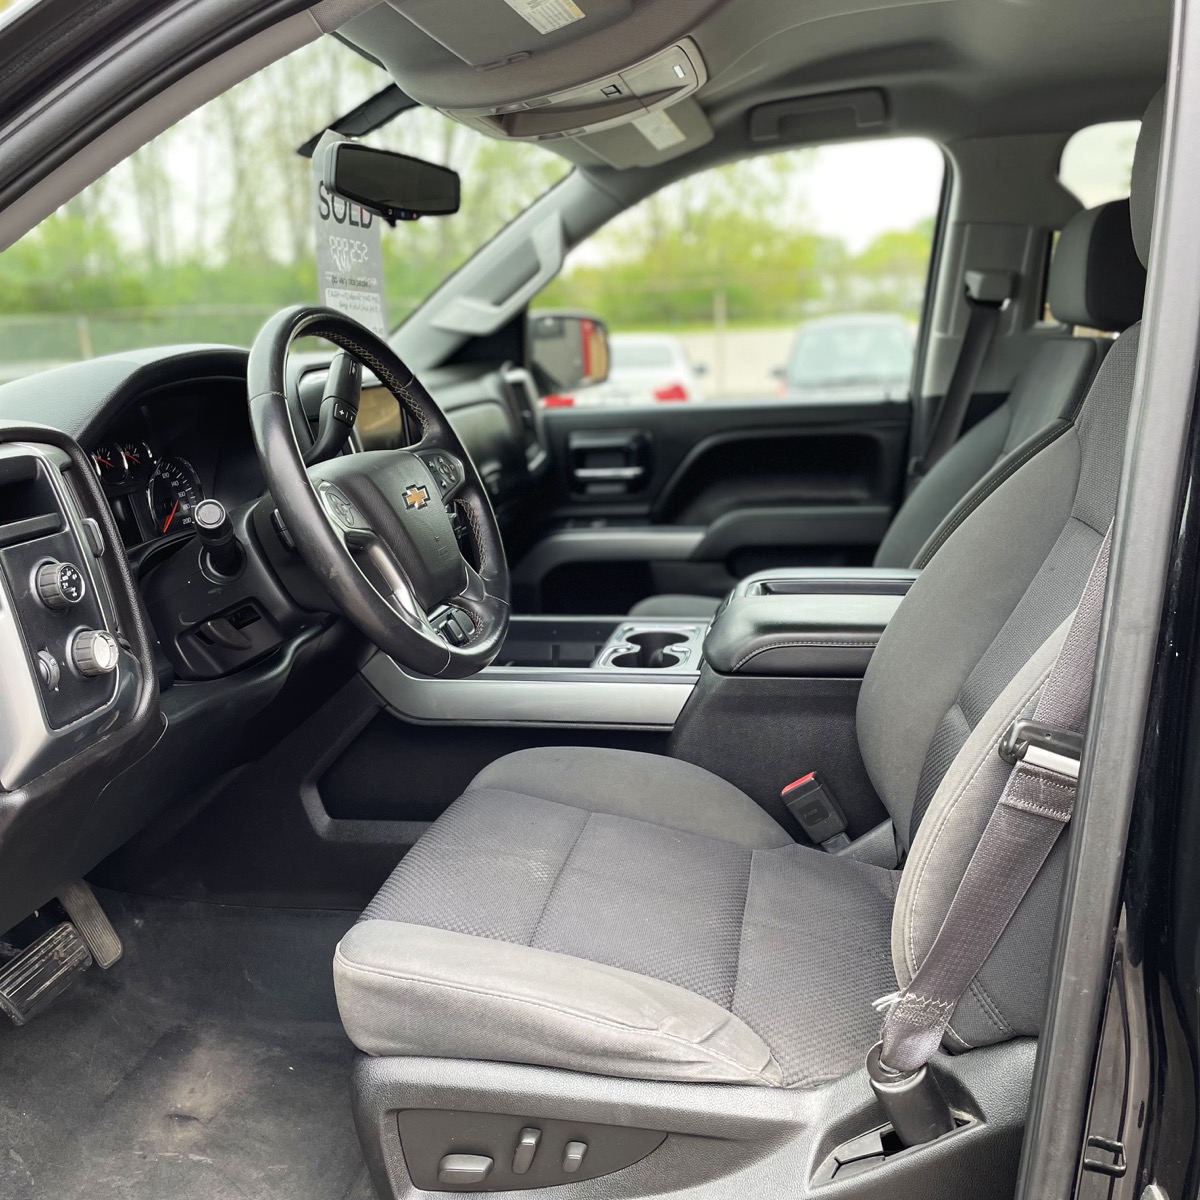 2014 Chevrolet Silverado 1500LT, Crew Cab, 4WD